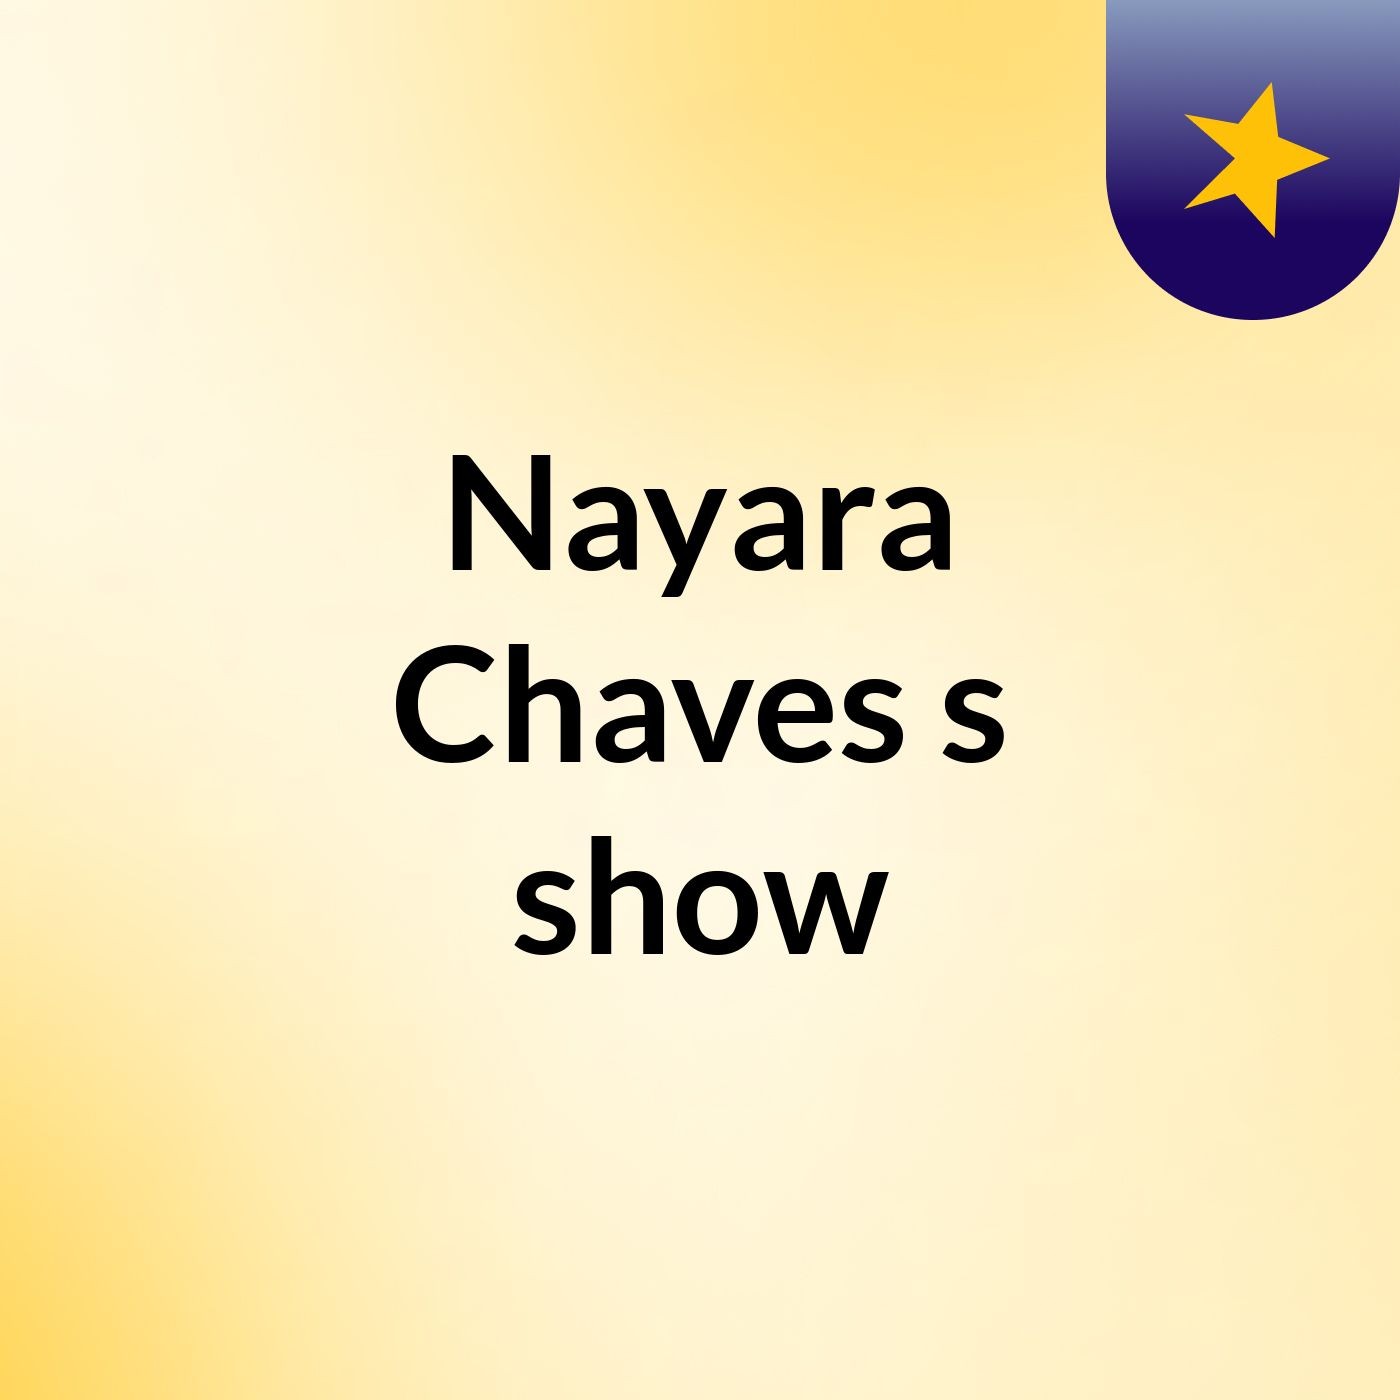 Nayara Chaves's show